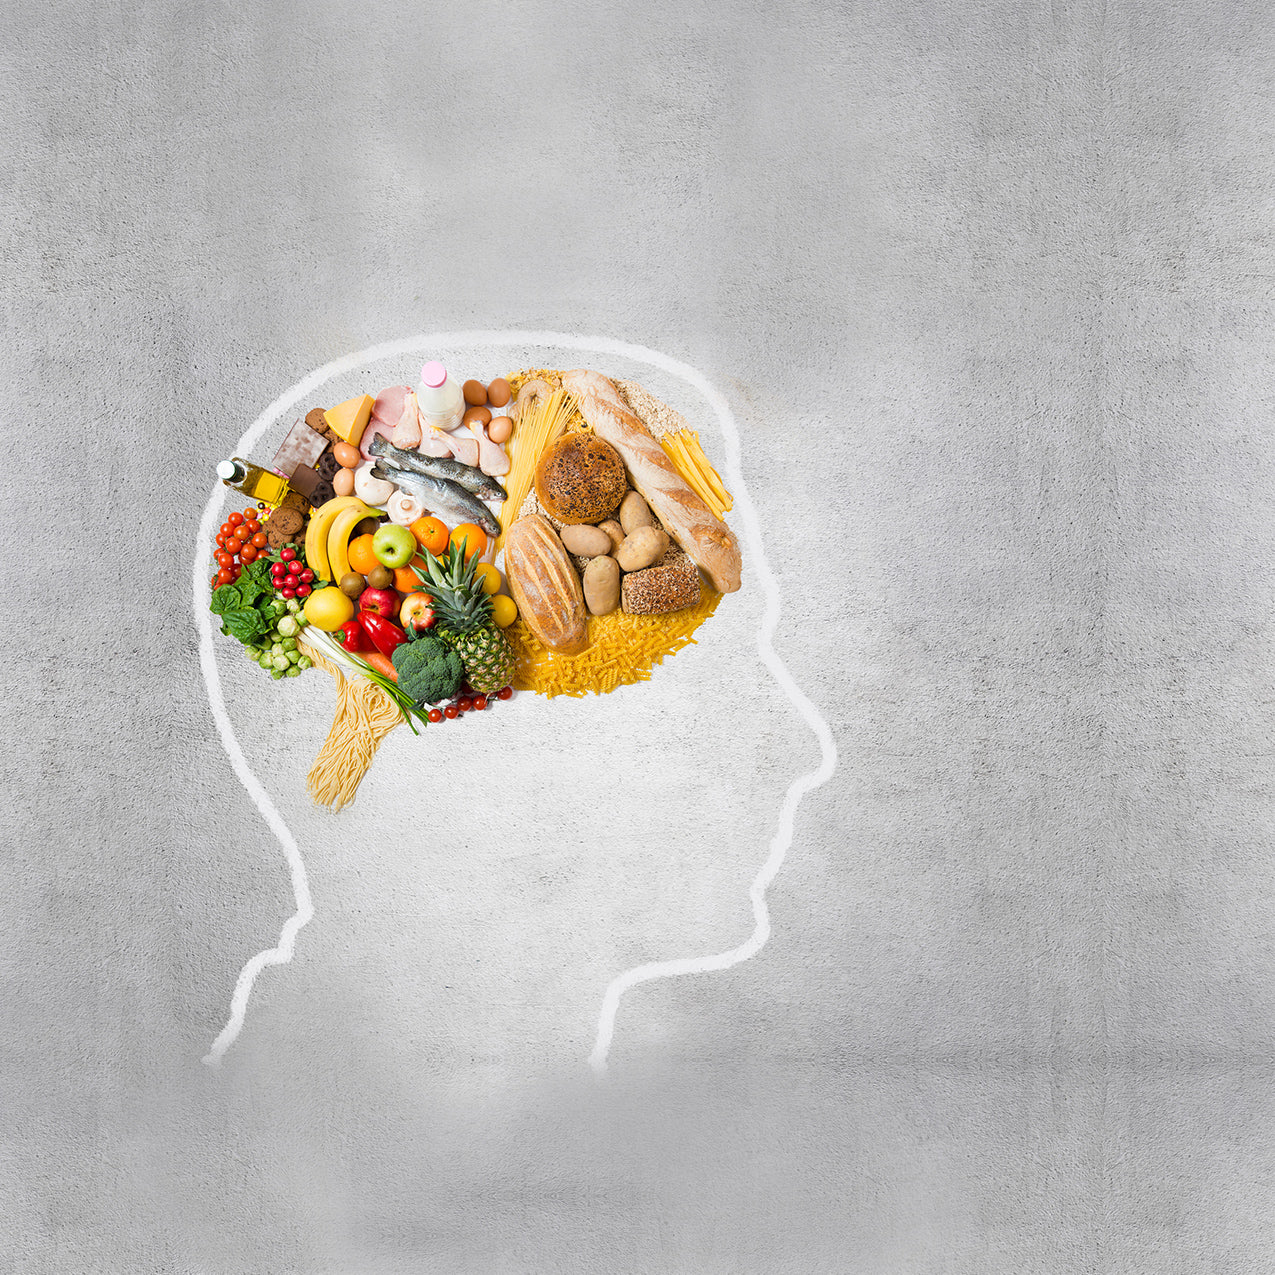 Eating for Optimal Brain Health